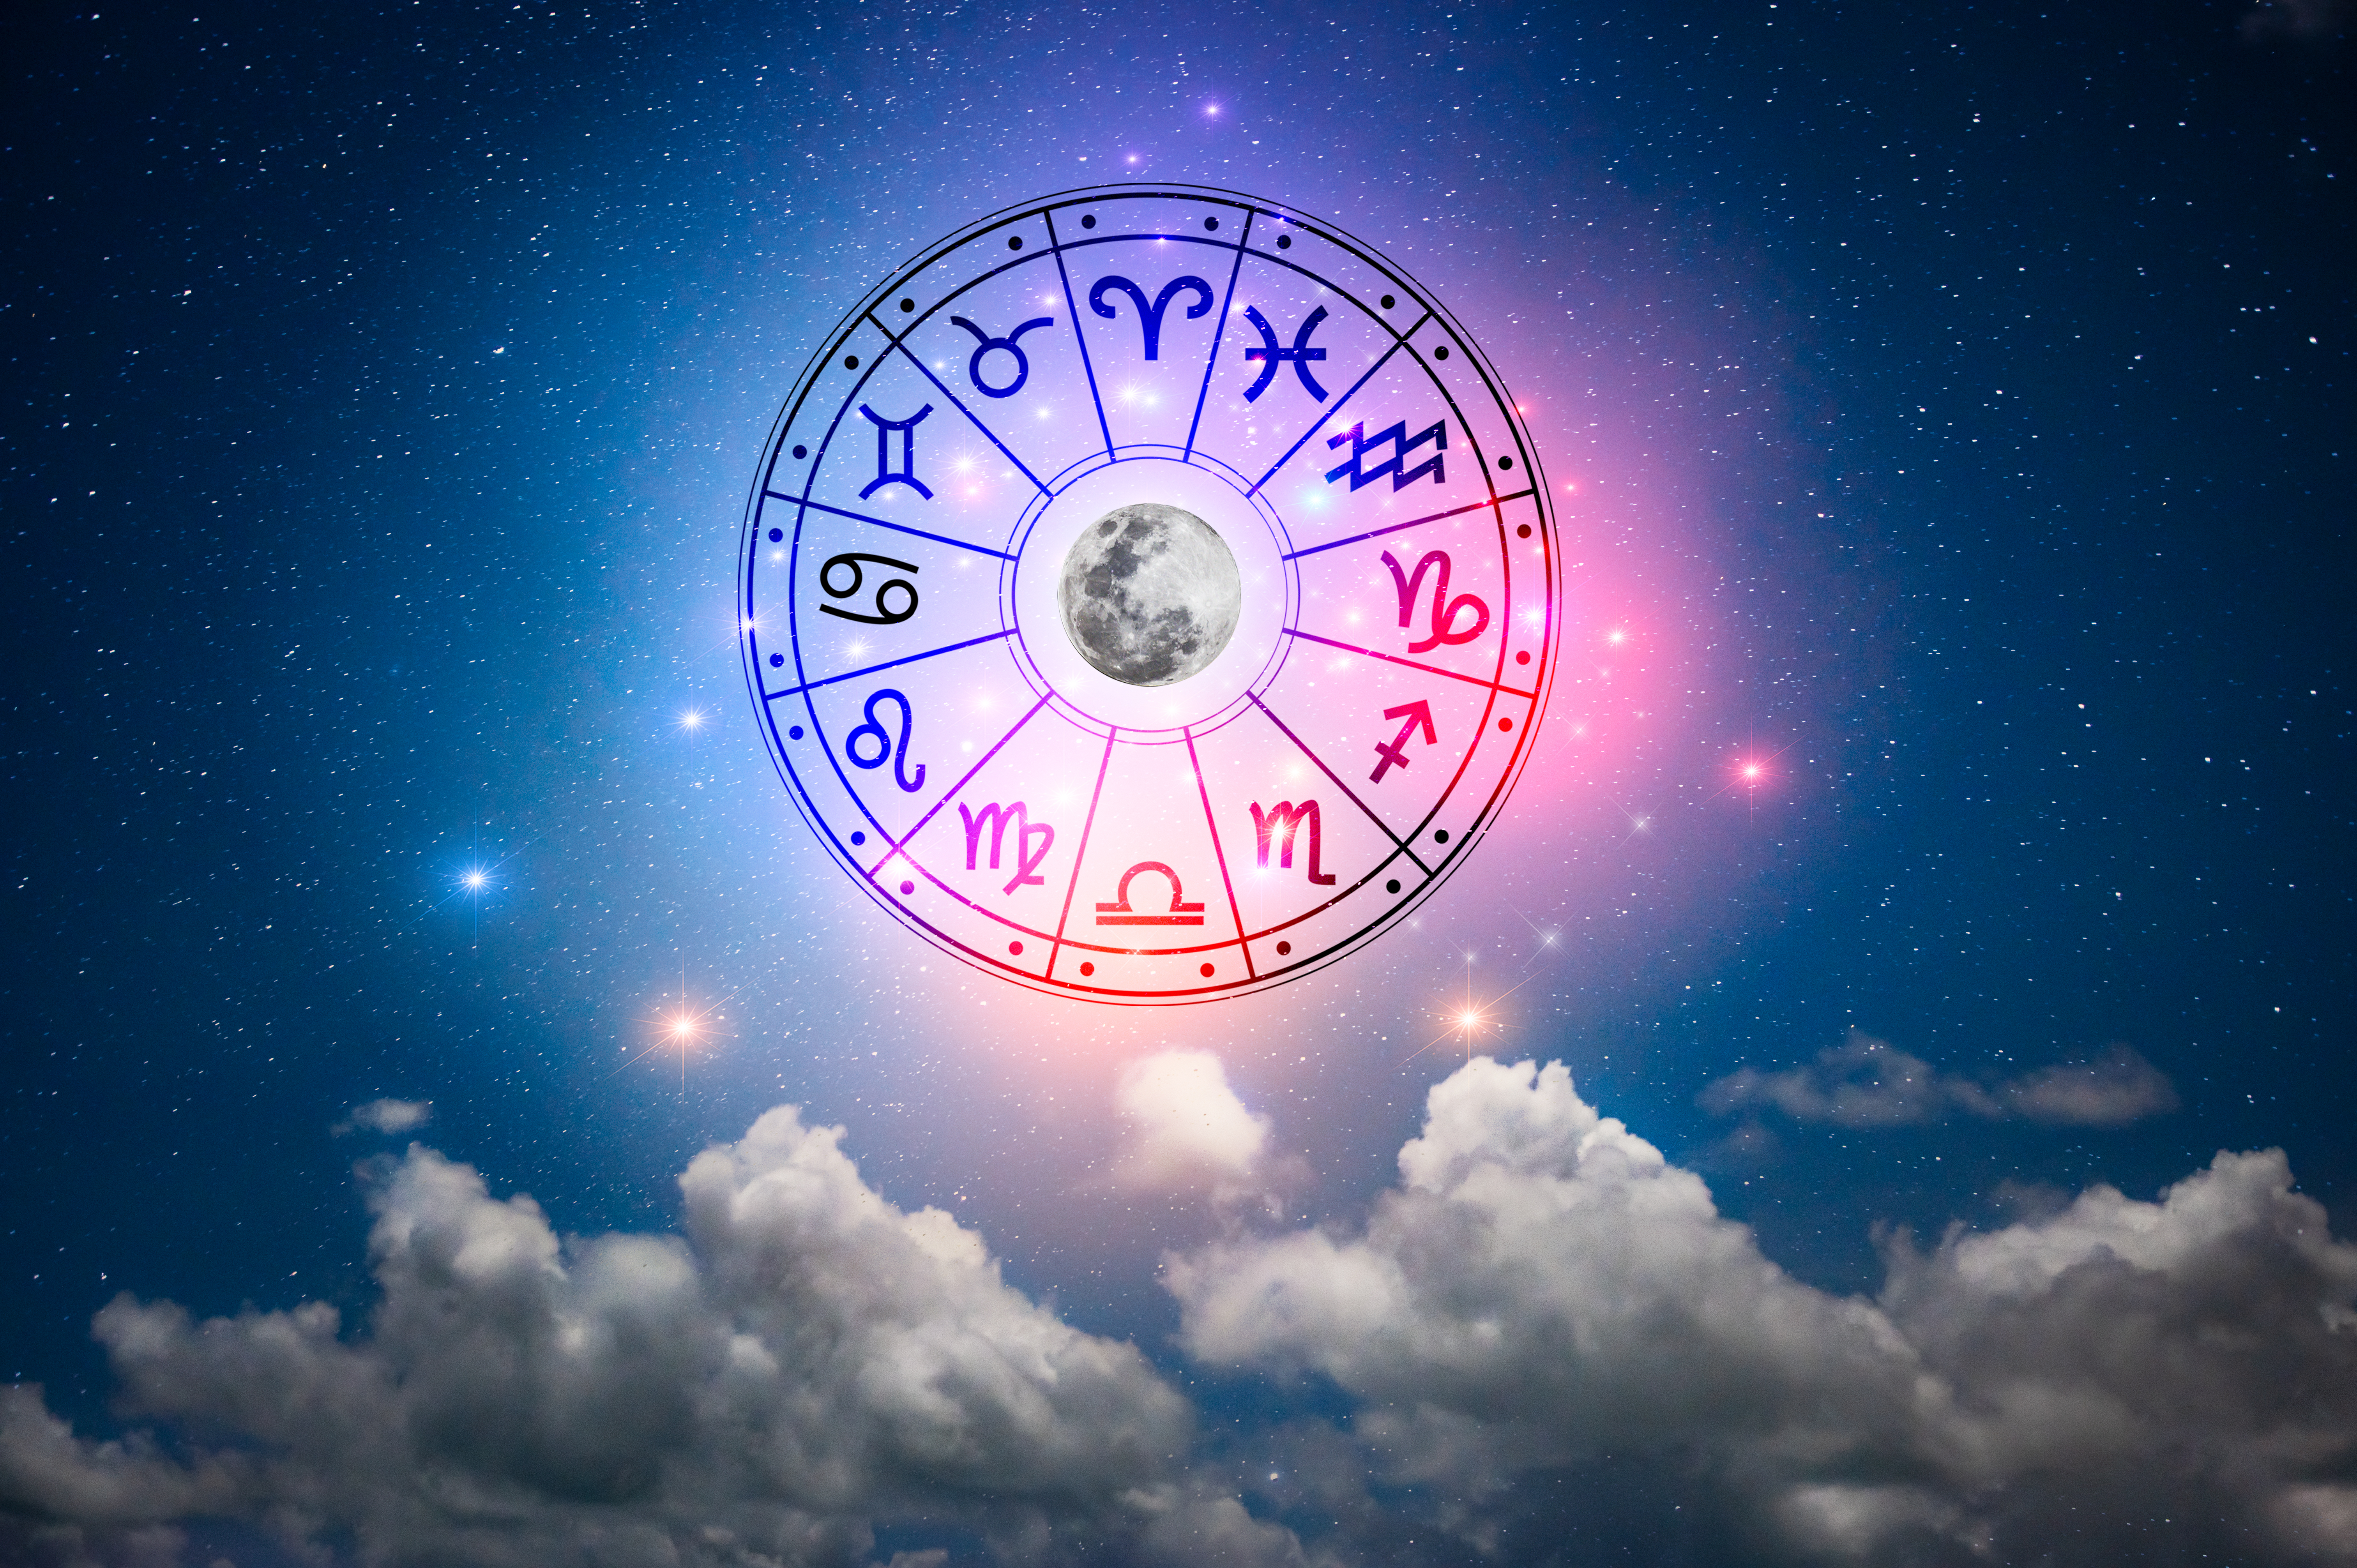 Jedes der 12 Sternzeichen weist unterschiedliche Merkmale auf, die dem Geburtsdatum und -ort einer Person zugeordnet werden